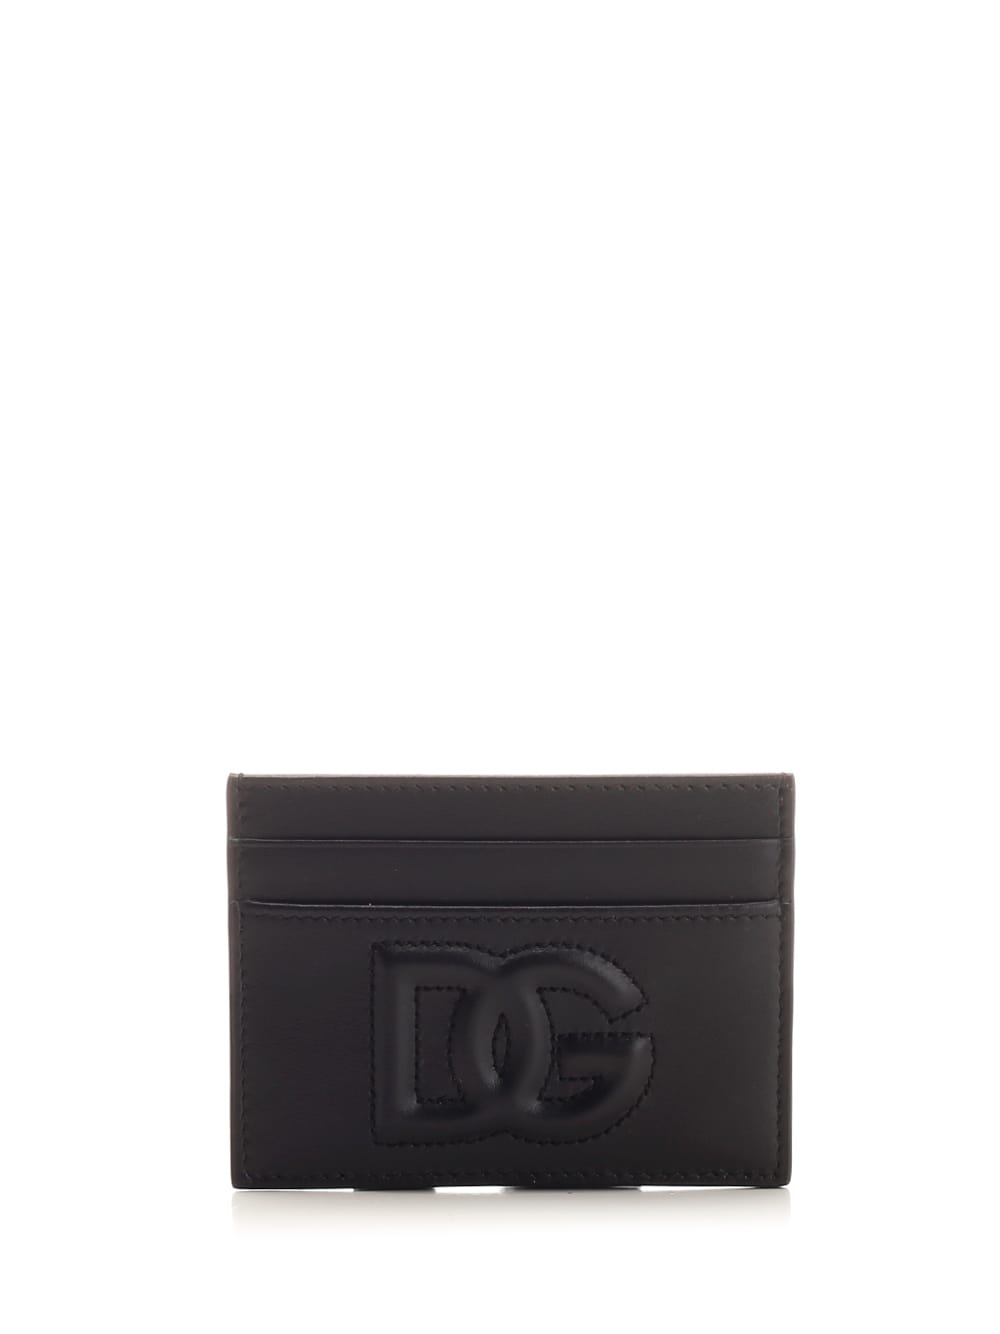 Dolce & Gabbana Classic Card Case In Burgundy